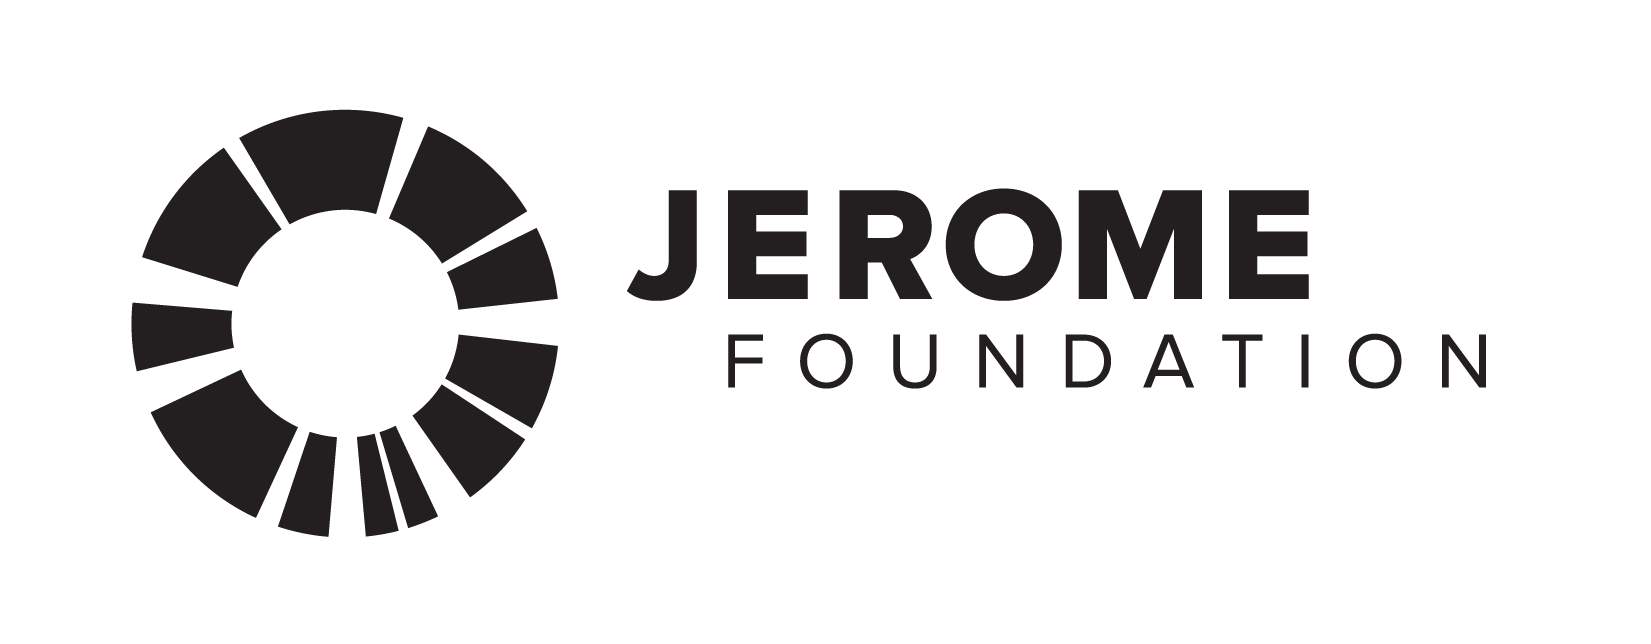 Foundation Logo - Logos | Jerome Foundation